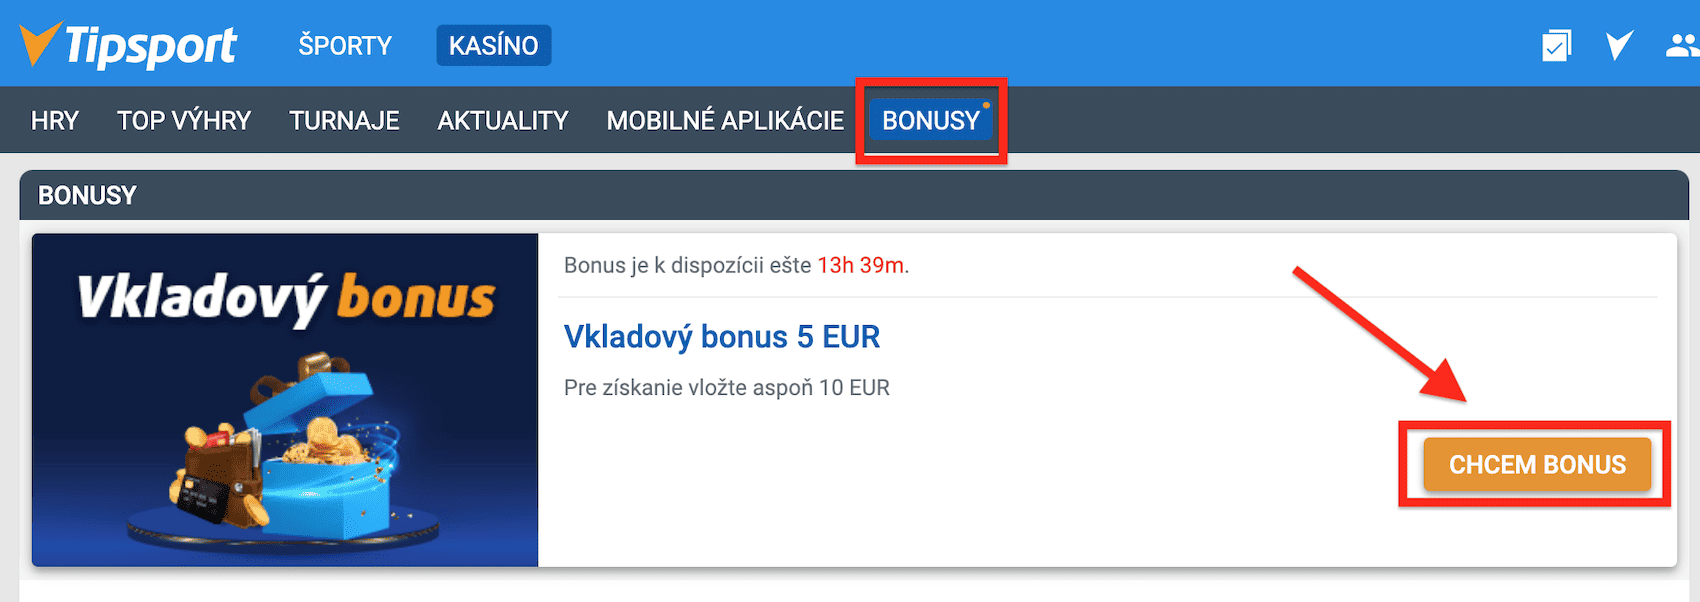 5 Eur bonus ku vkladu v Tipsport kasíne - ako aktivovať bonus